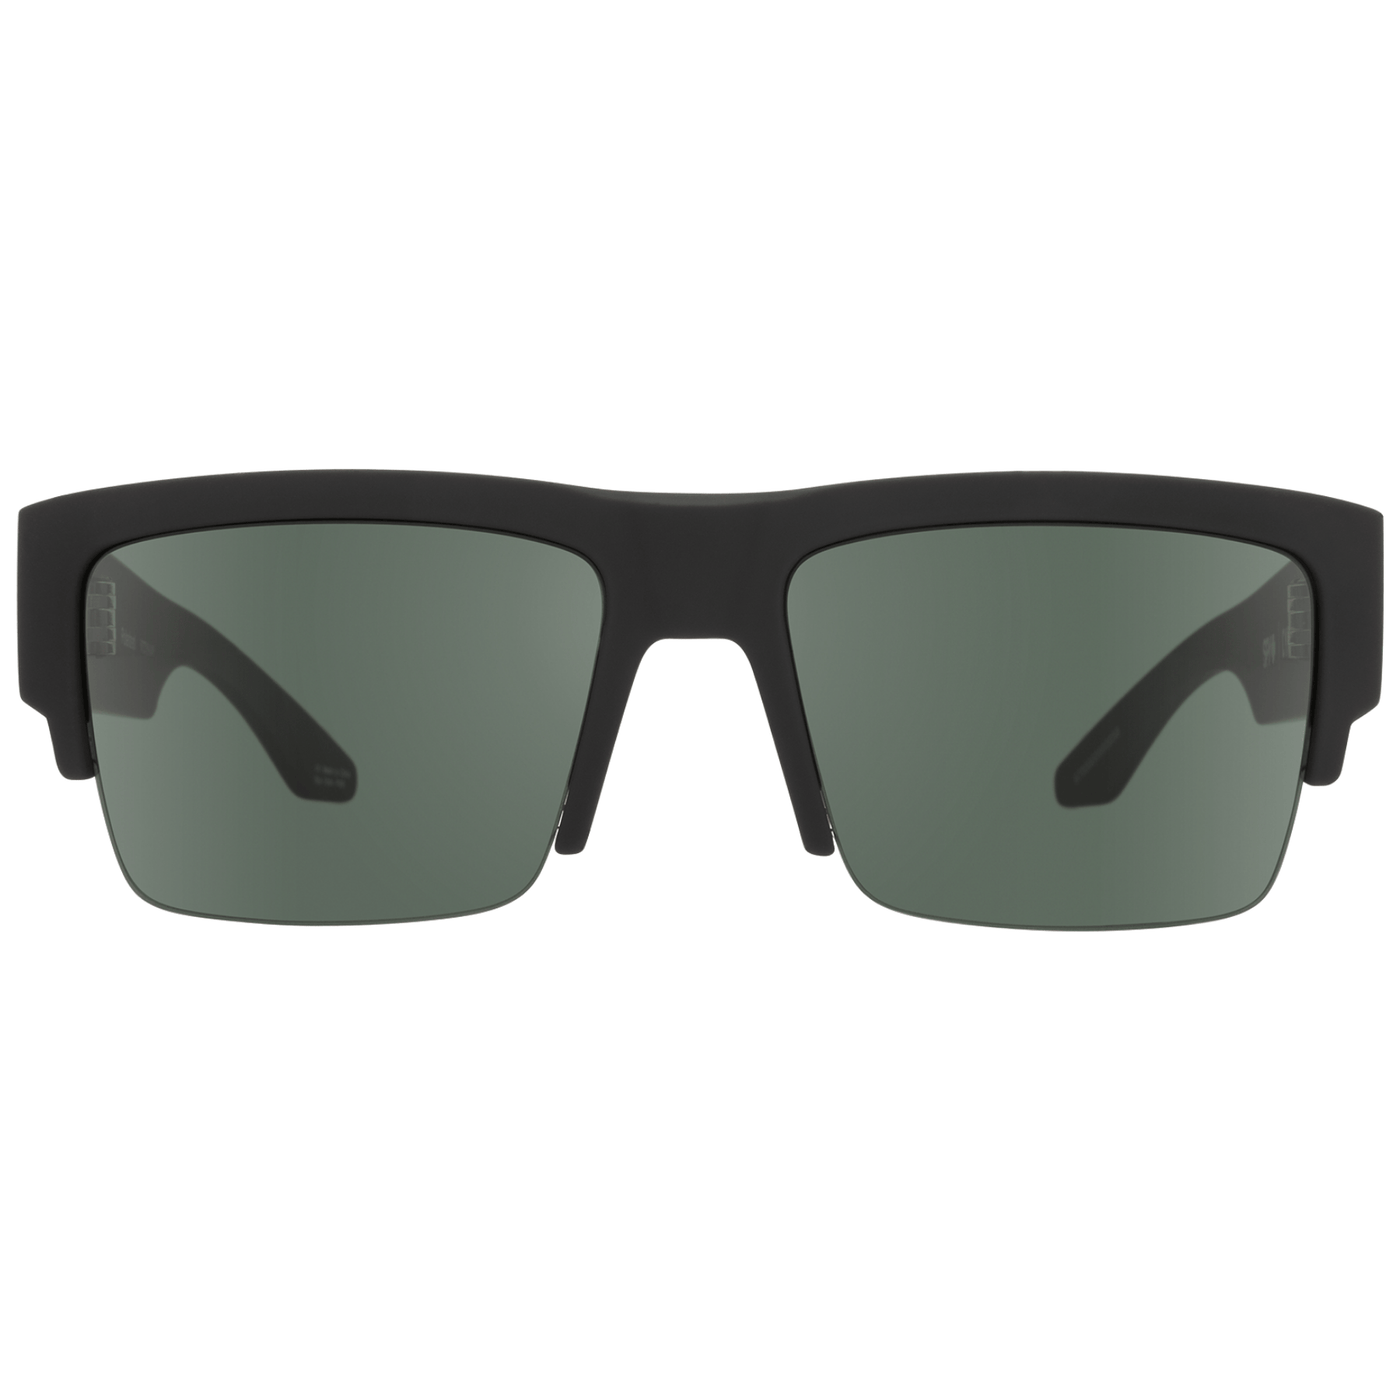 semi-rimless sunglasses - gray/green